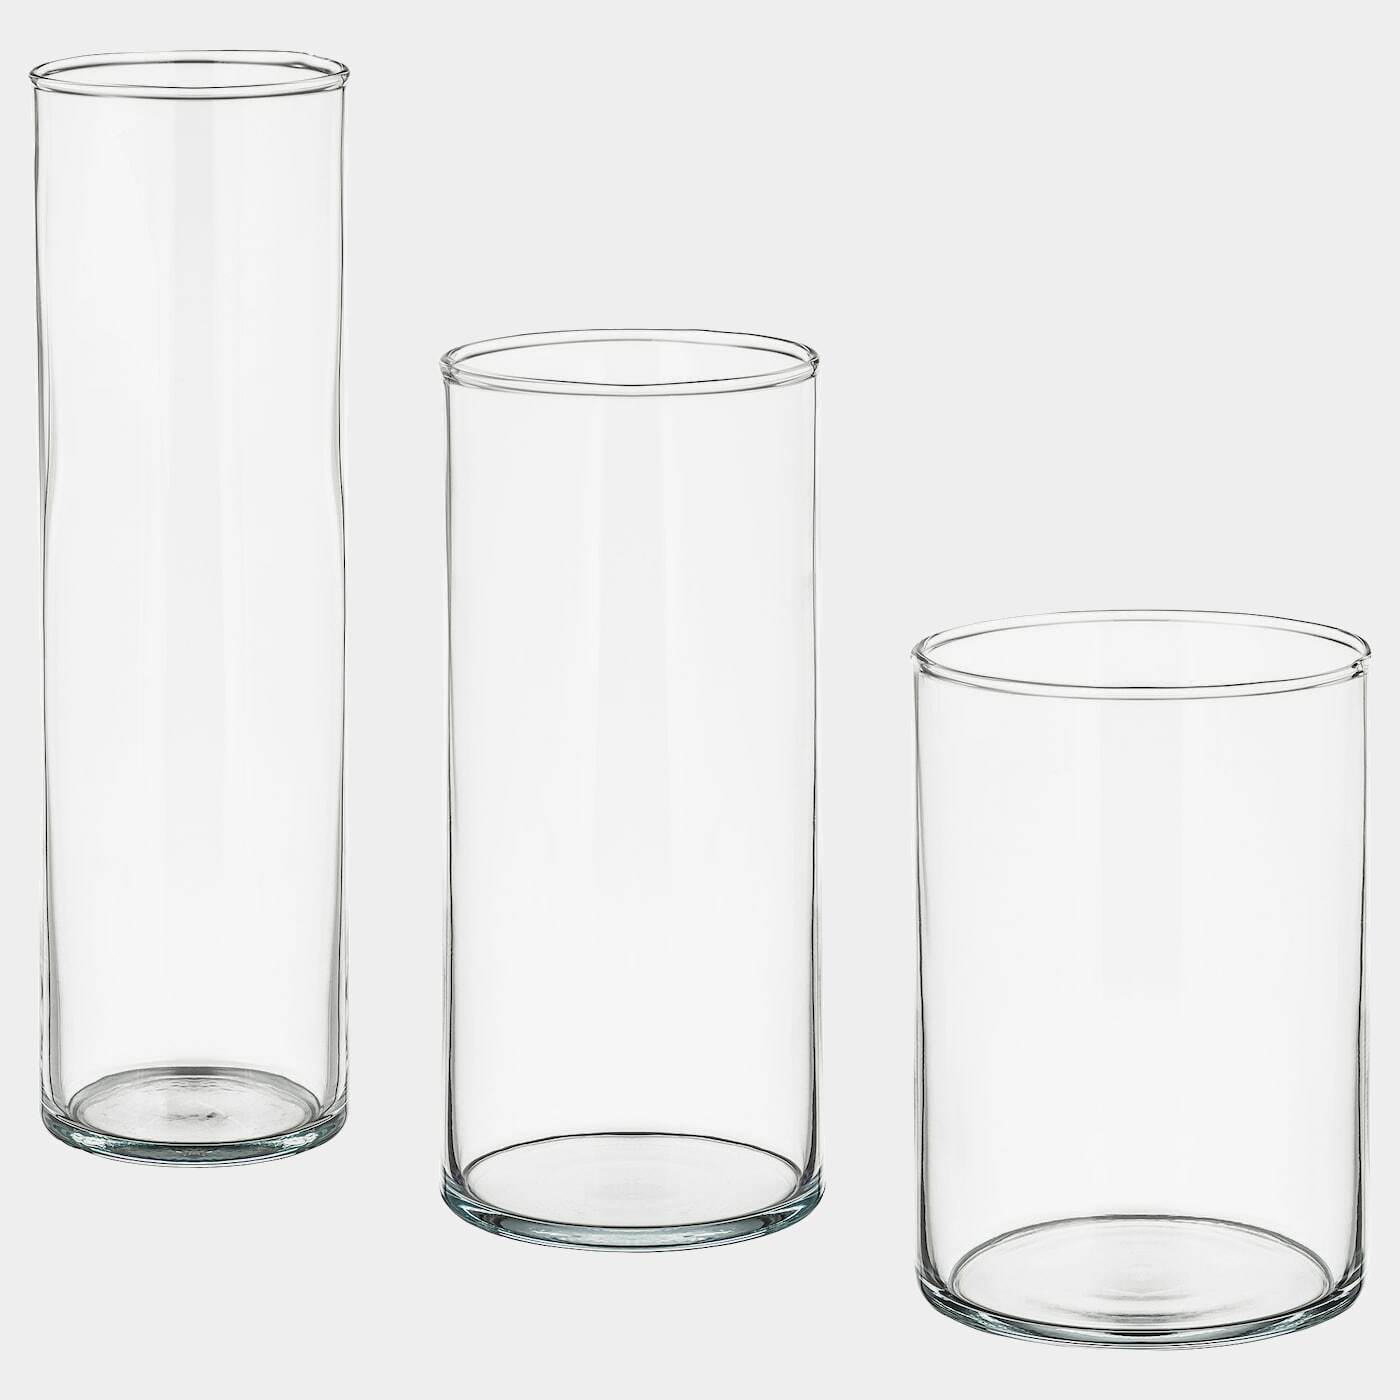 CYLINDER Vase 3er-Set  - Vasen - Dekoration Ideen für dein Zuhause von Home Trends. Dekoration Trends von Social Media Influencer für dein Skandi Zuhause.